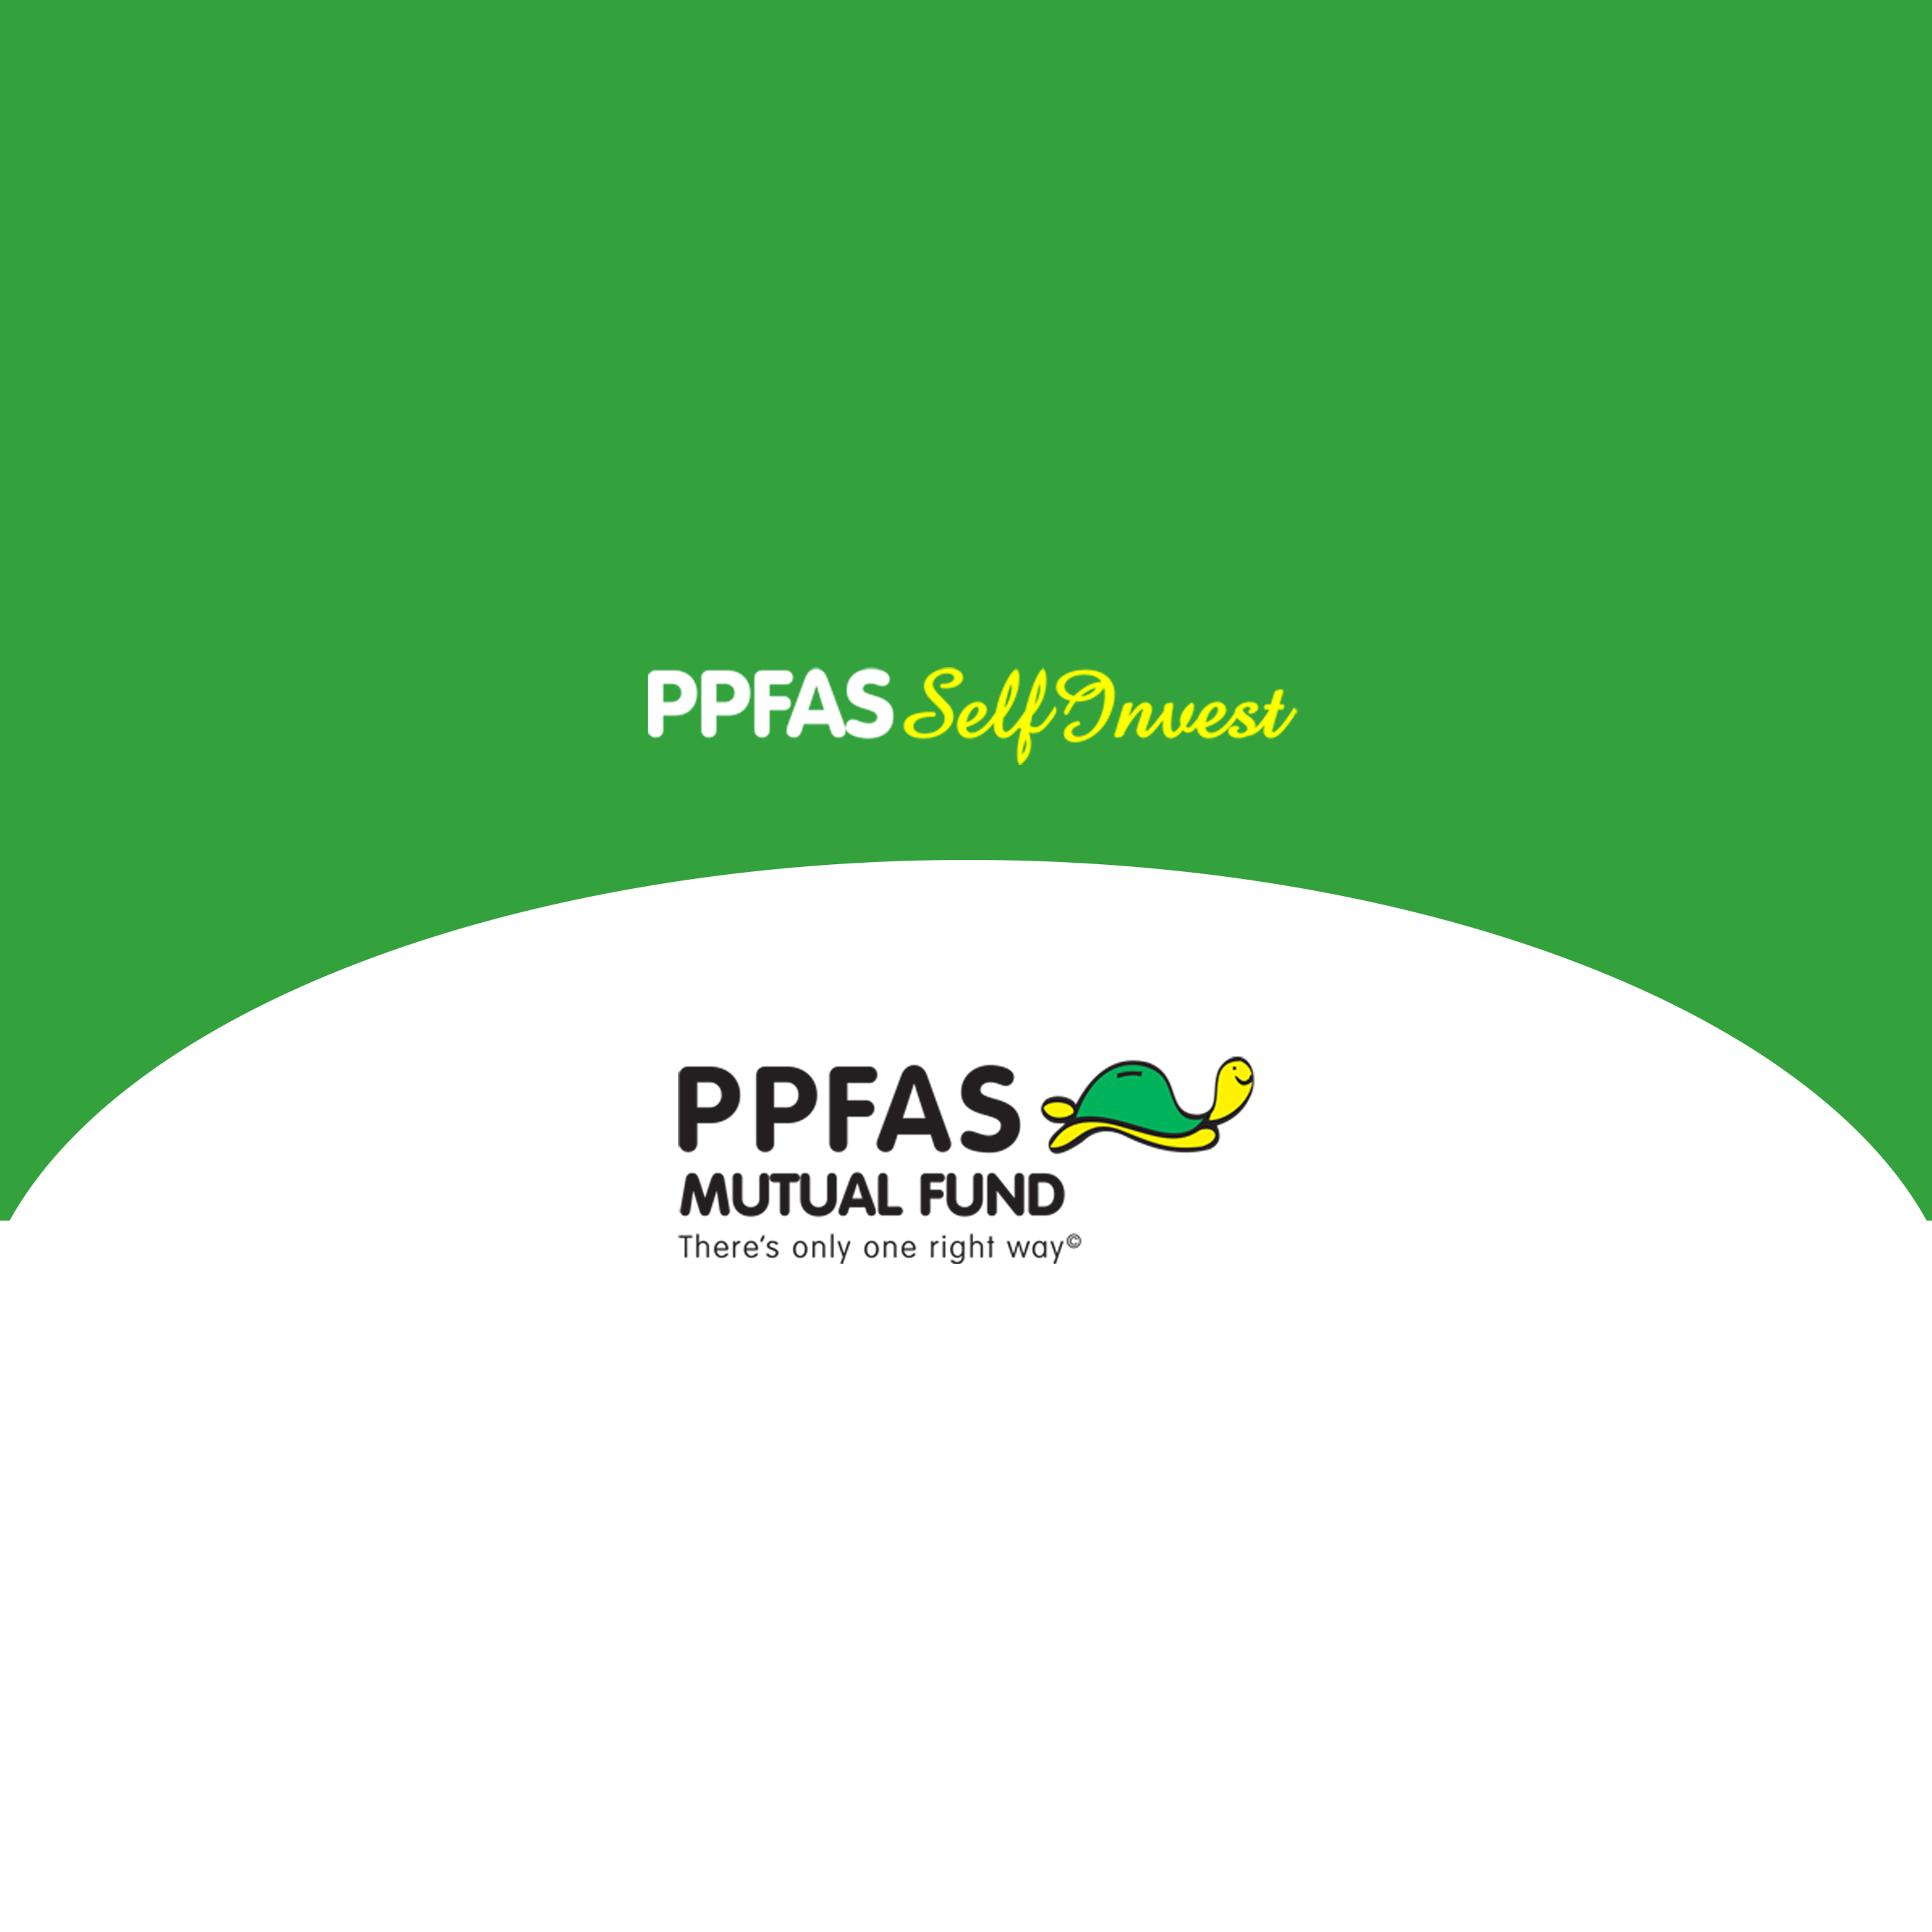 PPFAS selfinvest image